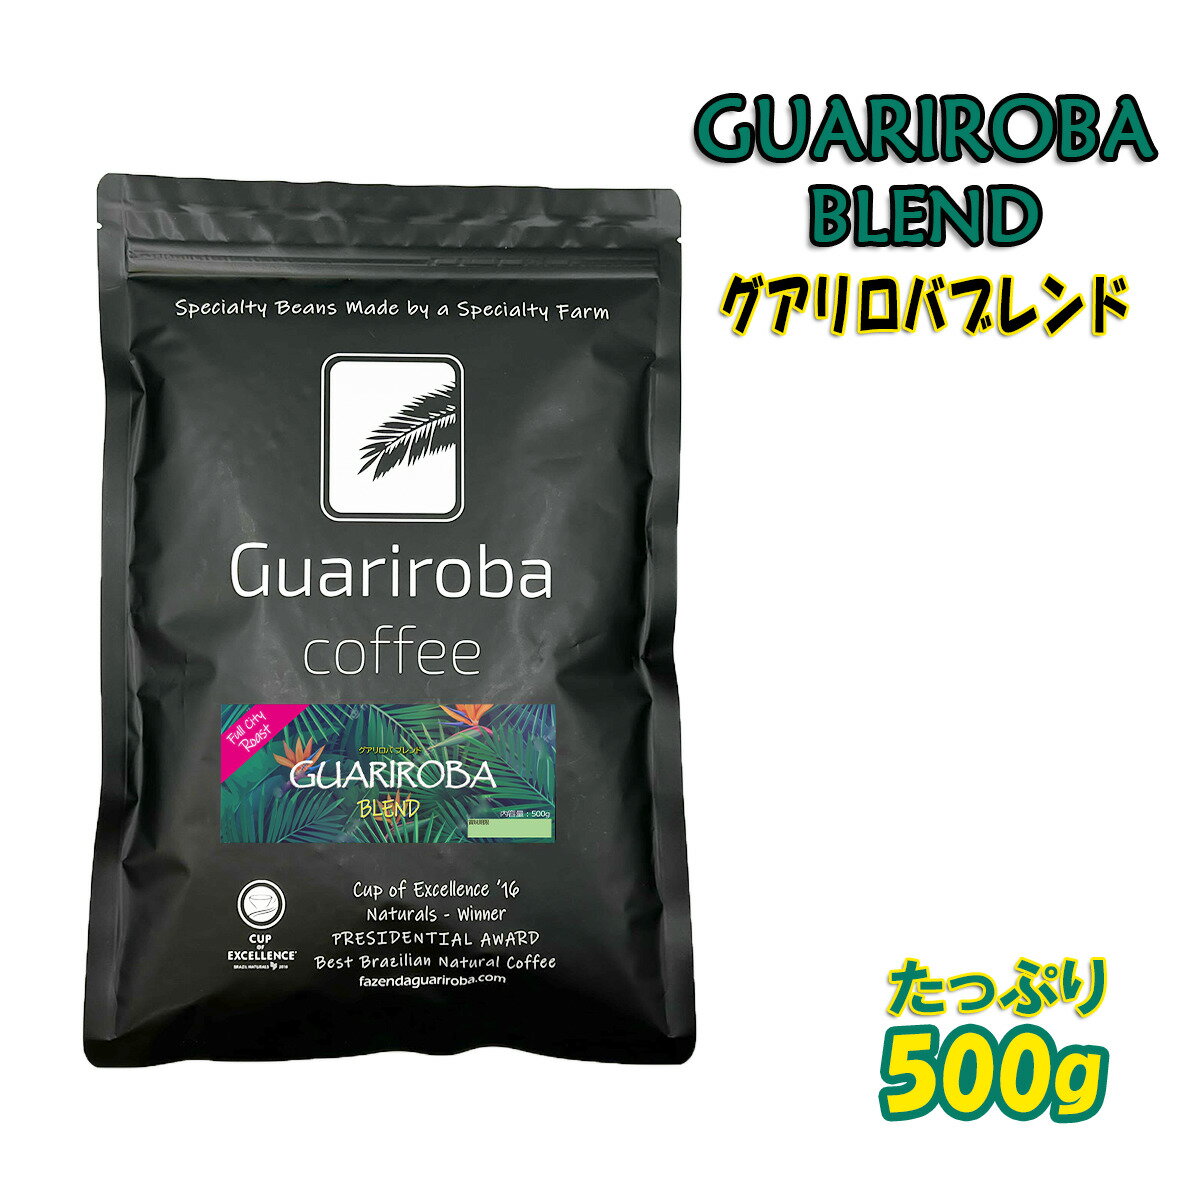 スペシャルティコーヒー豆 GUARIROBA BLEND 自家焙煎 グアリロバ農園のコーヒー豆を絶妙なバランスブレンドした 美味しい ハウスブレンド マイルドで飲みやすい味わい フルシティロースト（中深煎り）。フルシティロースト（中深煎り）500g